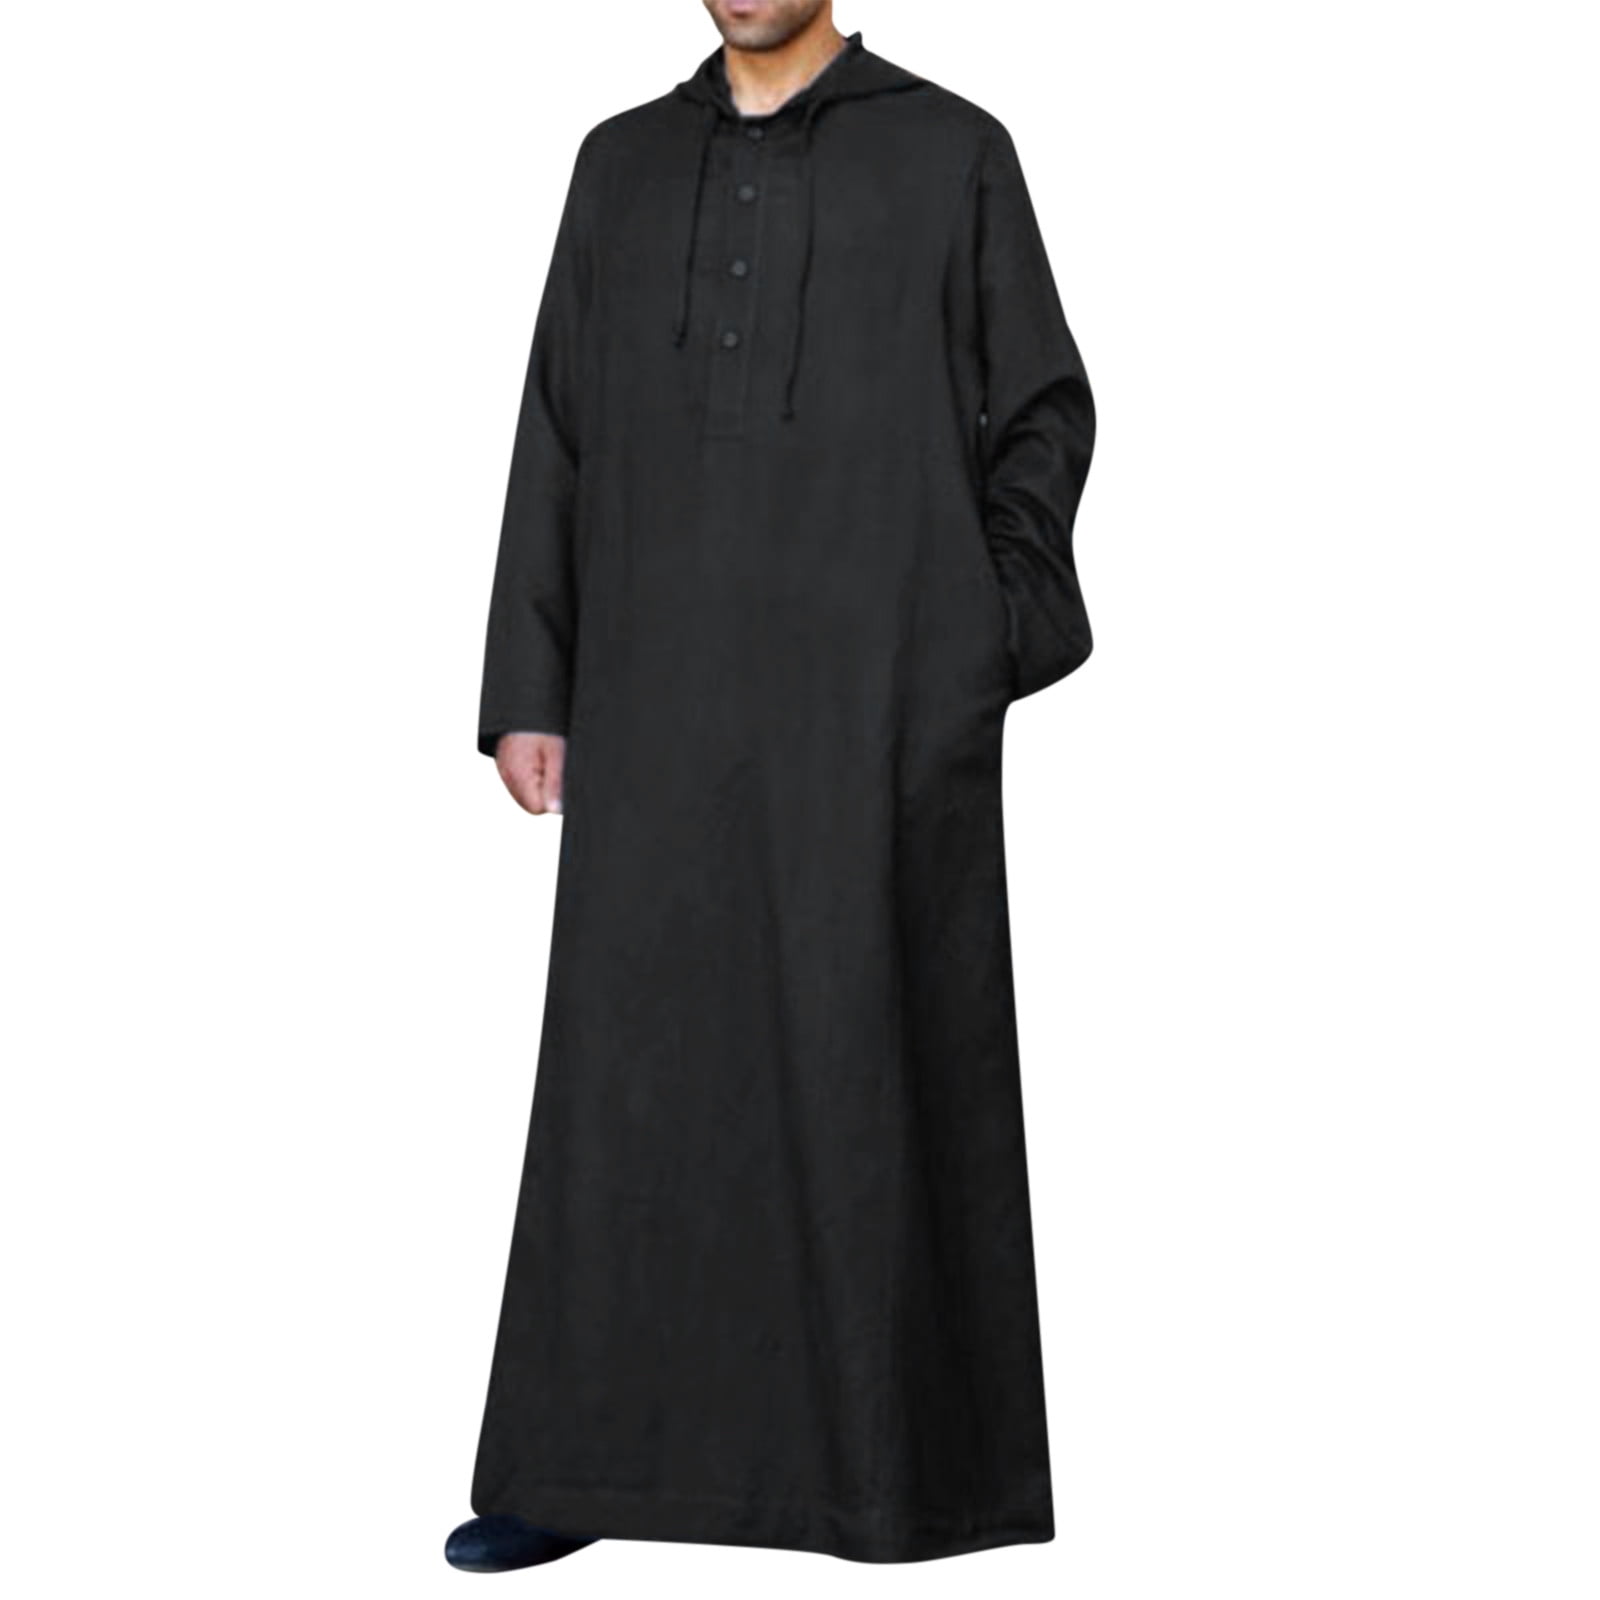 muslim dress mens